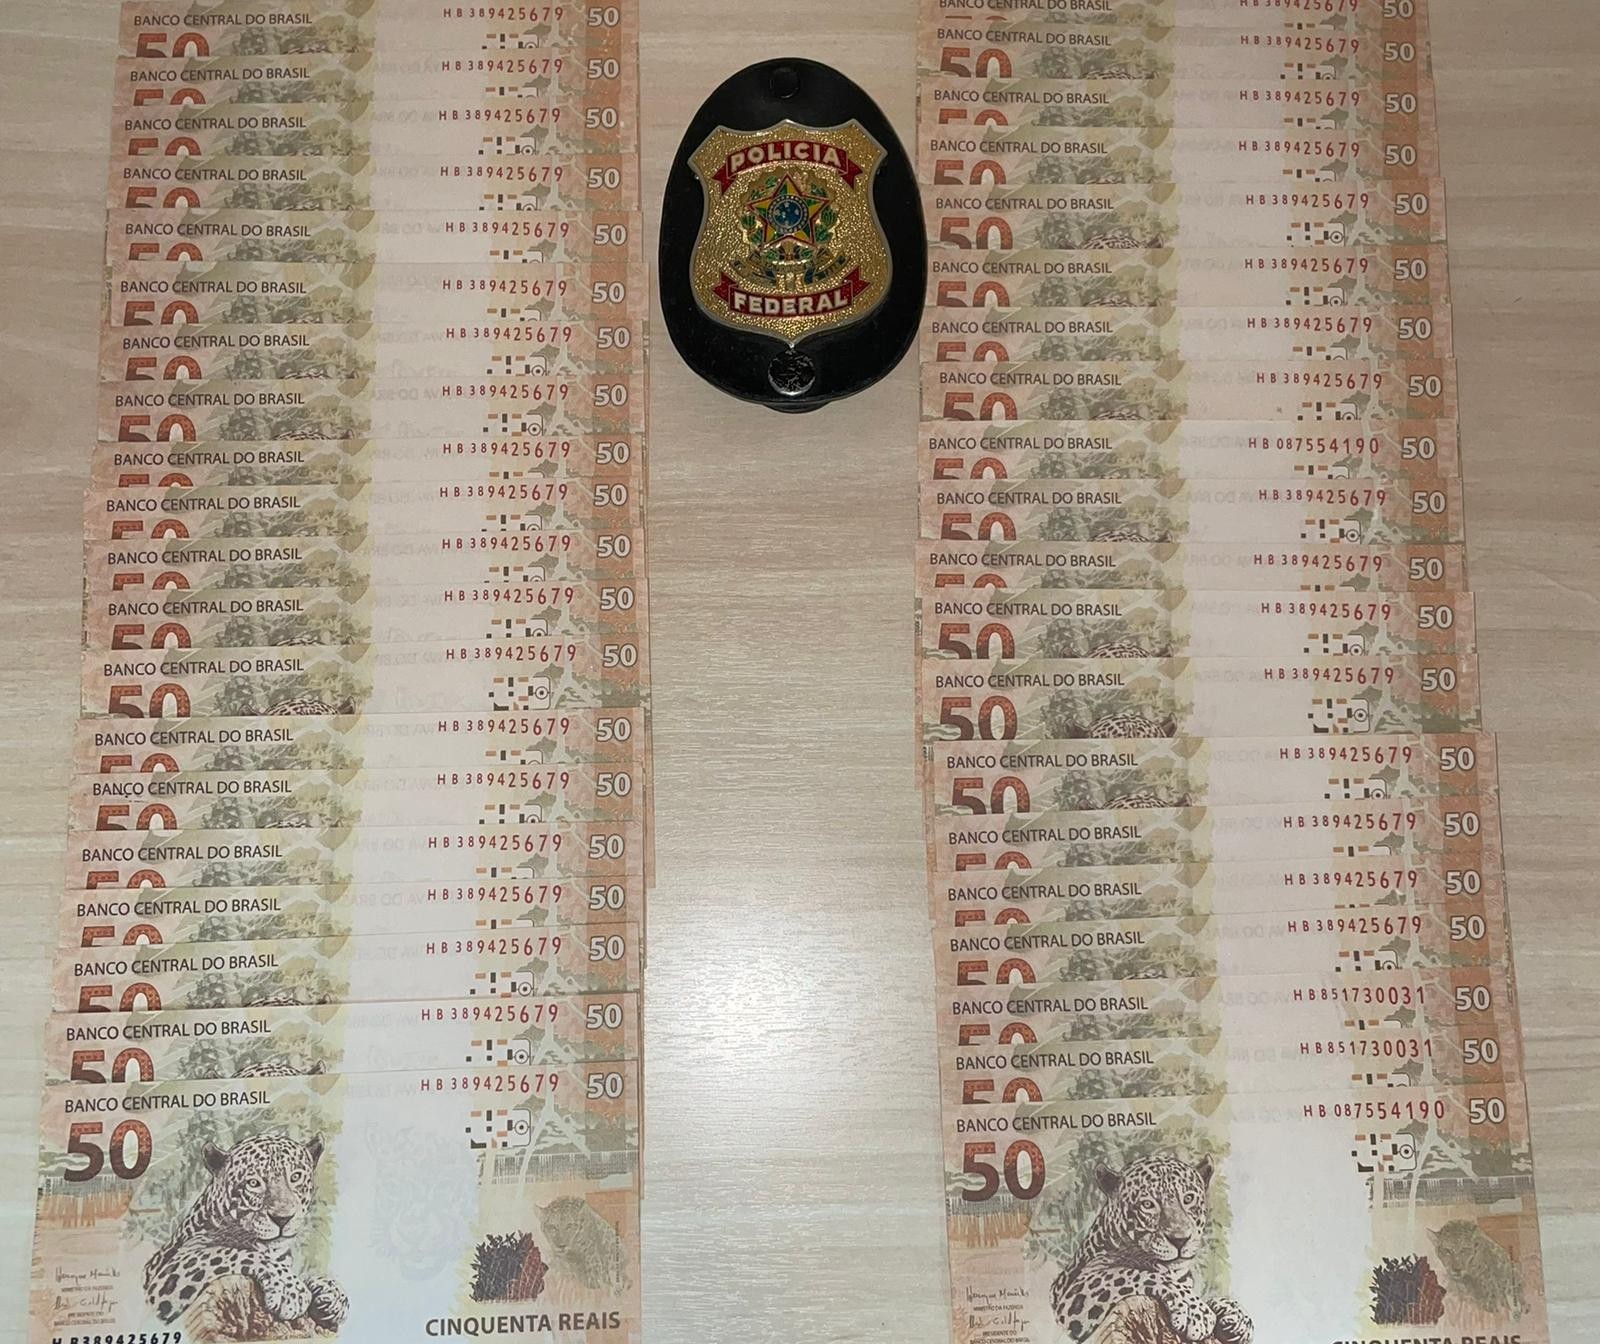 Polícia Federal prende homem na região de Maringá com cédulas falsas de R$ 50